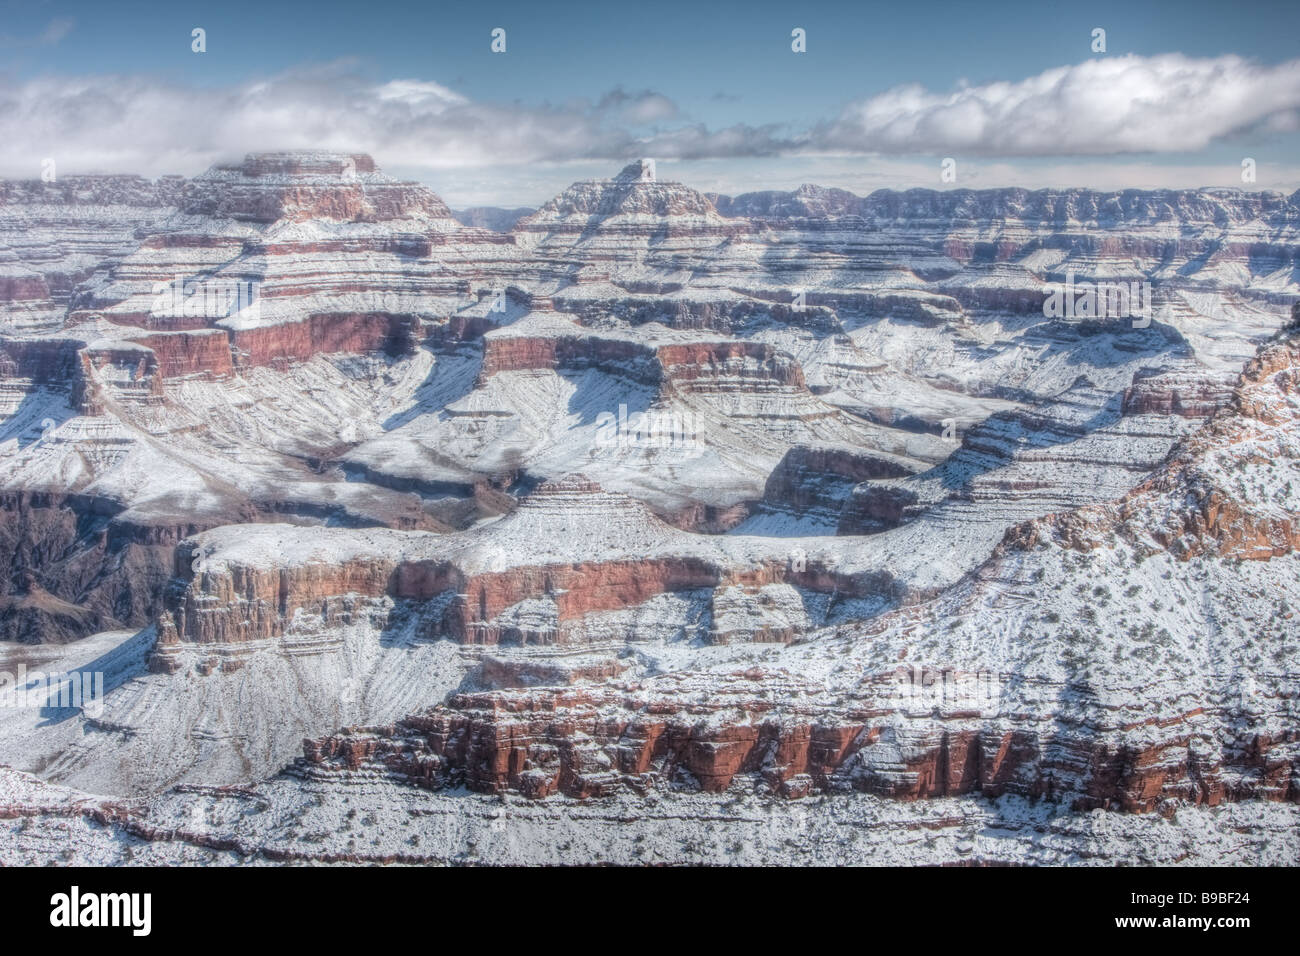 Grand Canyon-Blick vom Mather Point nach einem schweren Winter Schneefall Stockfoto